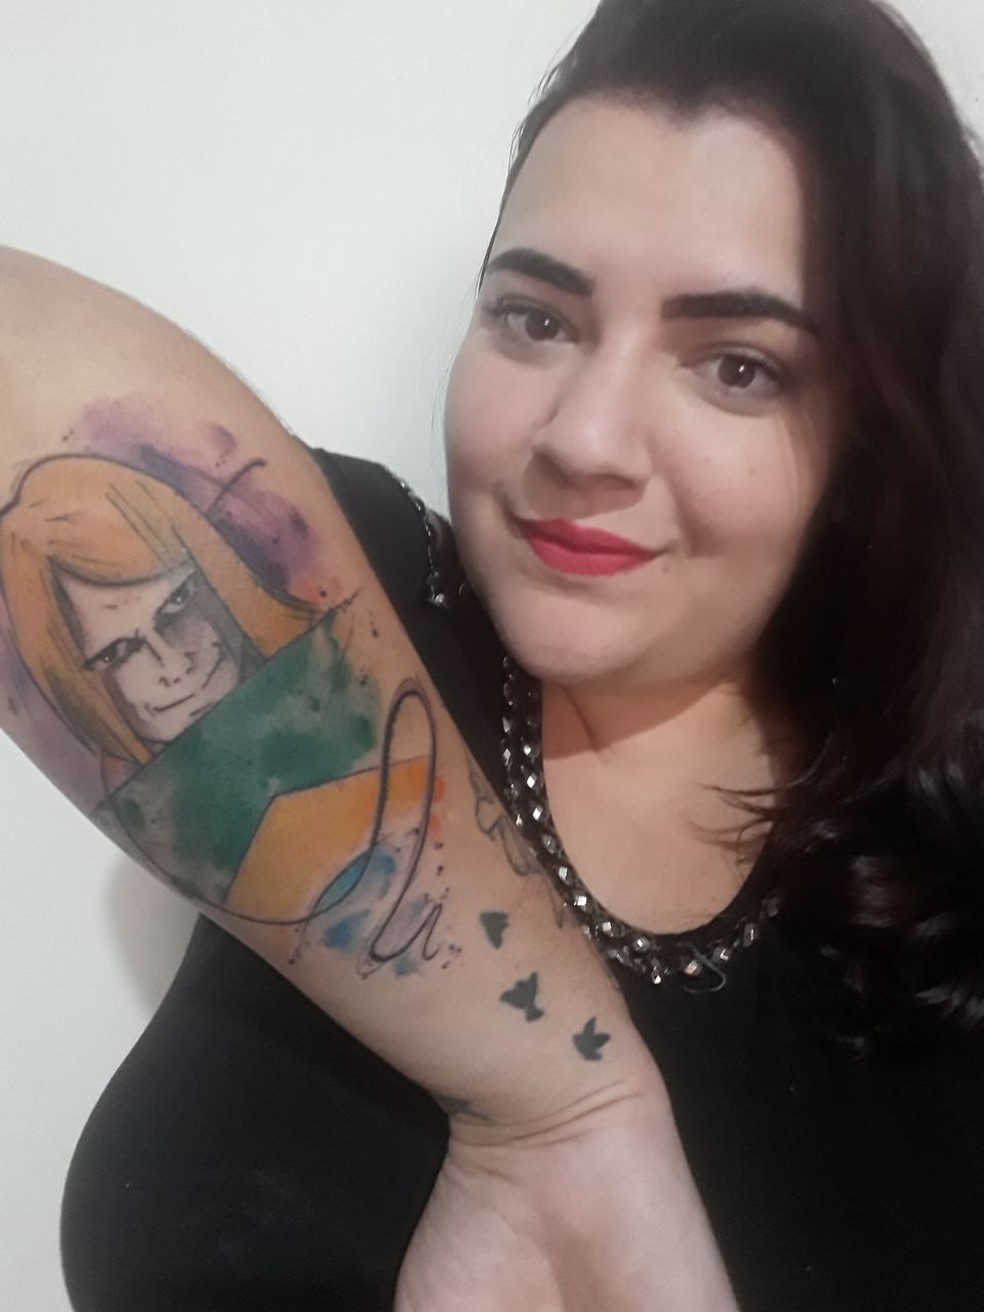 Manicure de Joinville faz tatuagem do 'torcedor misterioso': 'A torcida é  pelo hexa, não me arrependo', Santa Catarina